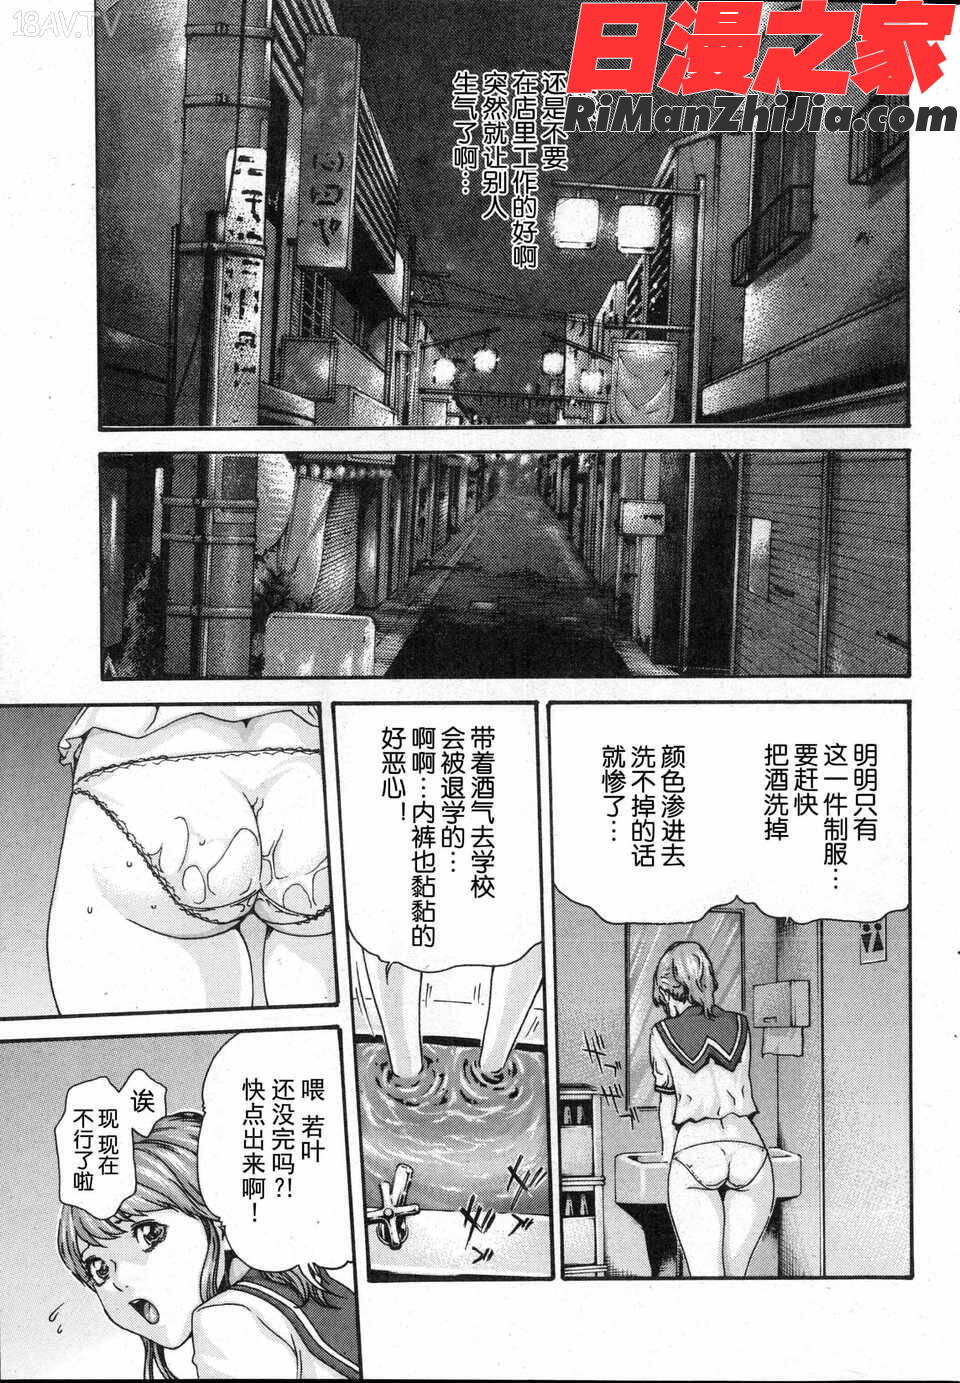 第01-03話漫画 免费阅读 整部漫画 11.jpg